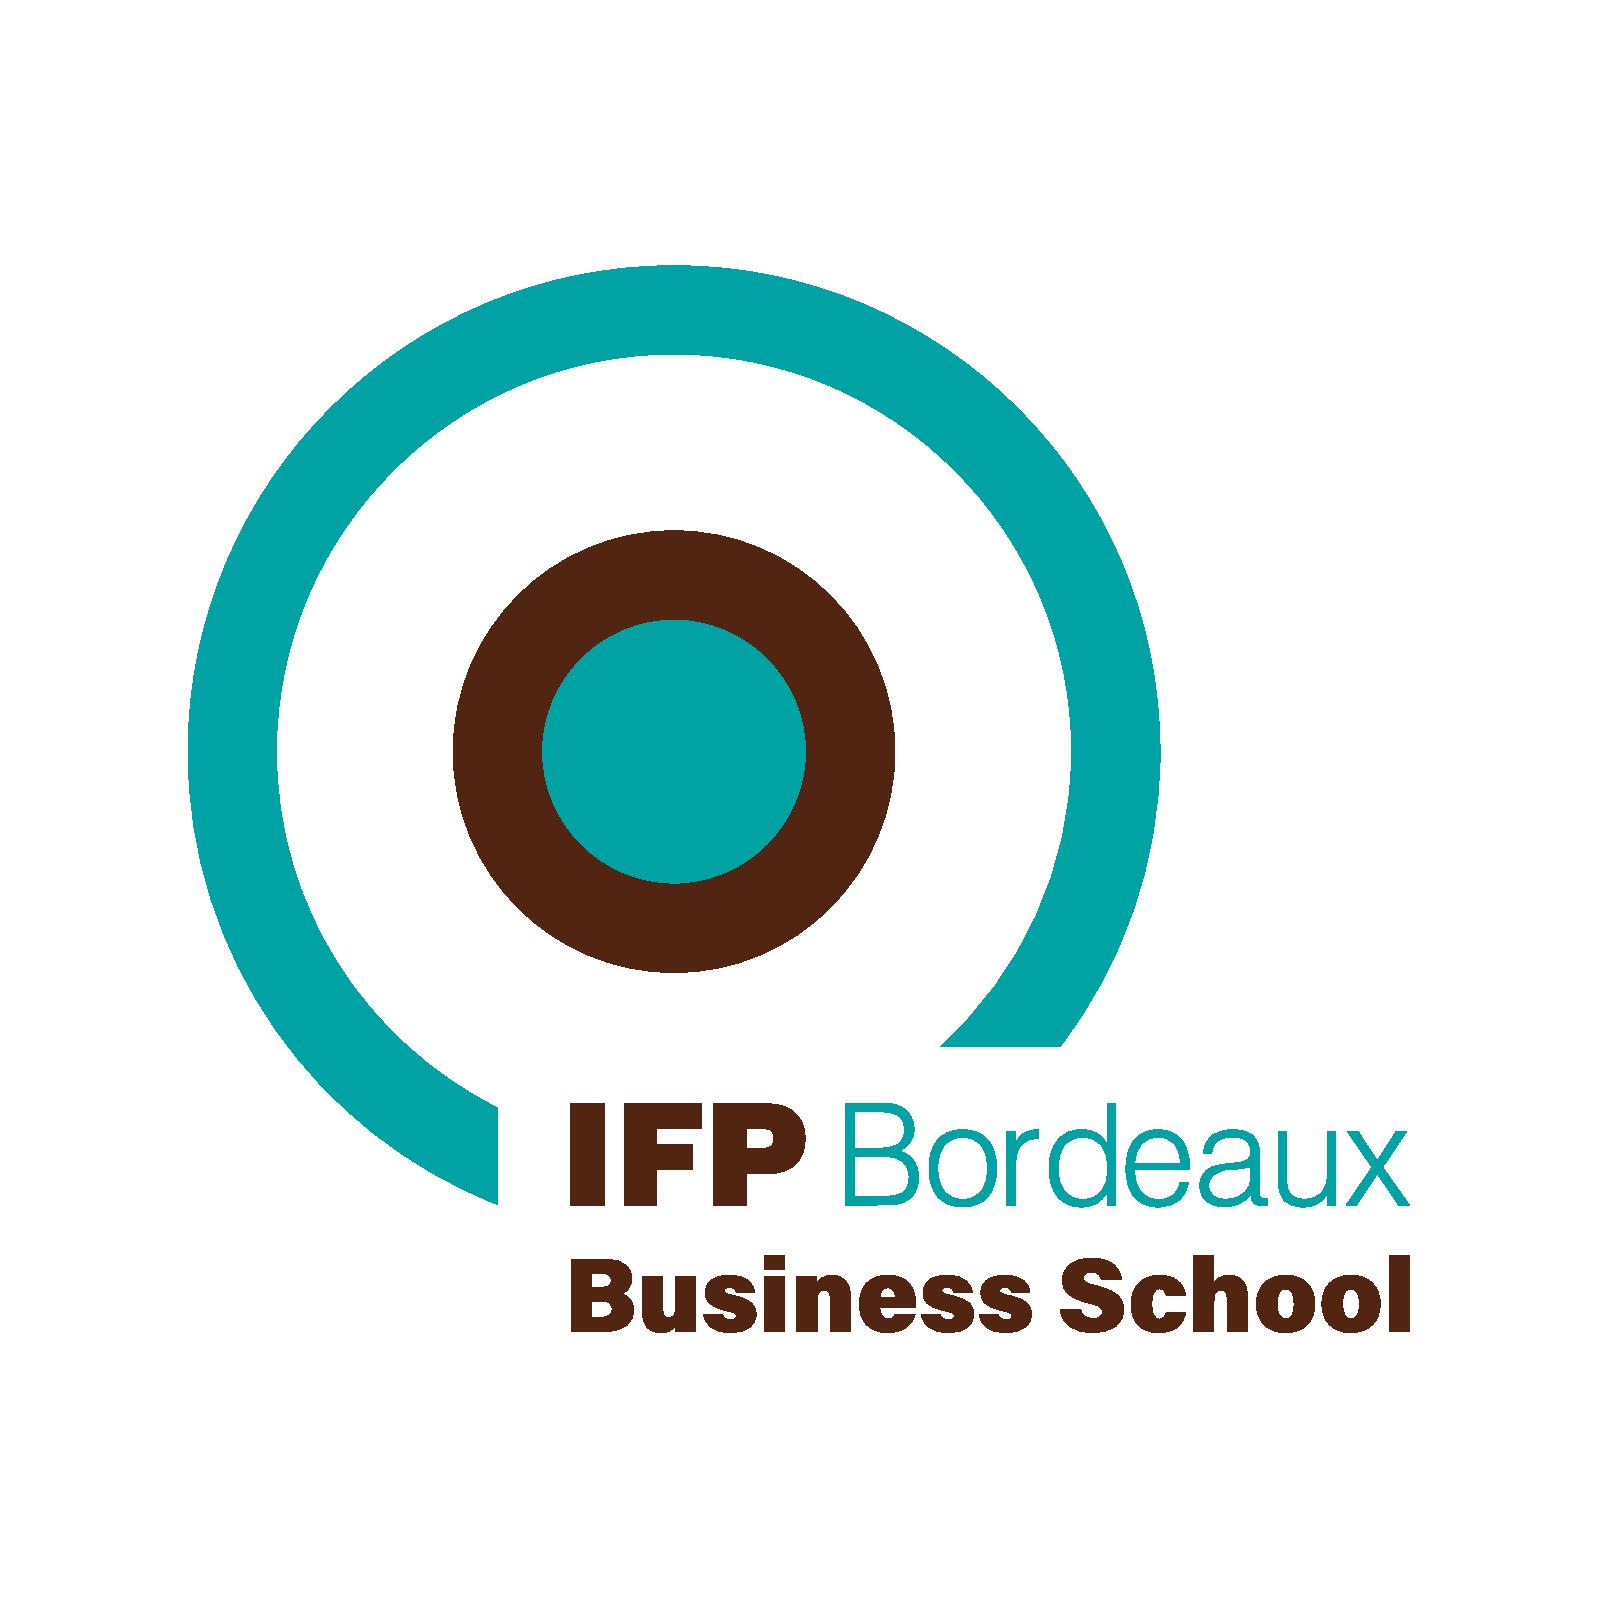 IFP Bordeaux Business School